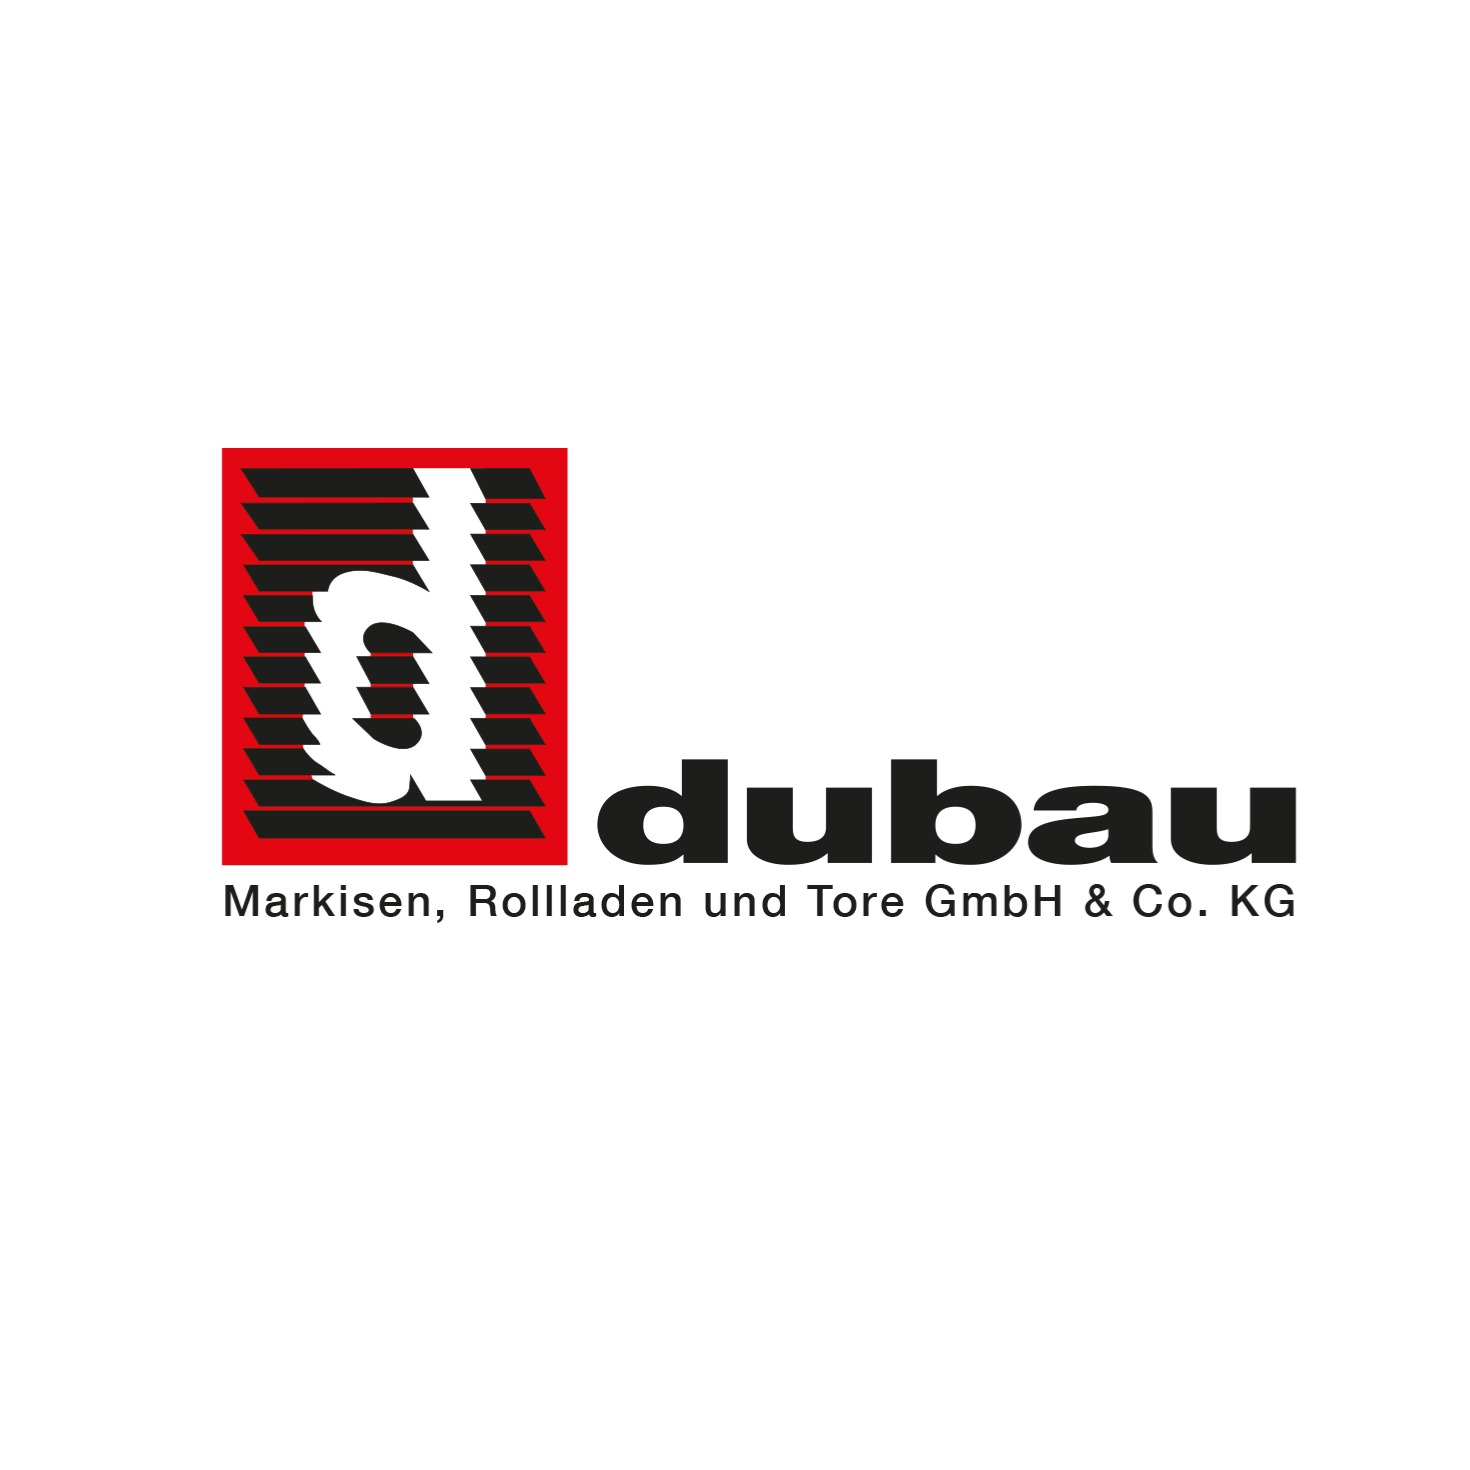 Dubau Markisen Rollladen und Tore GmbH & Co. KG  